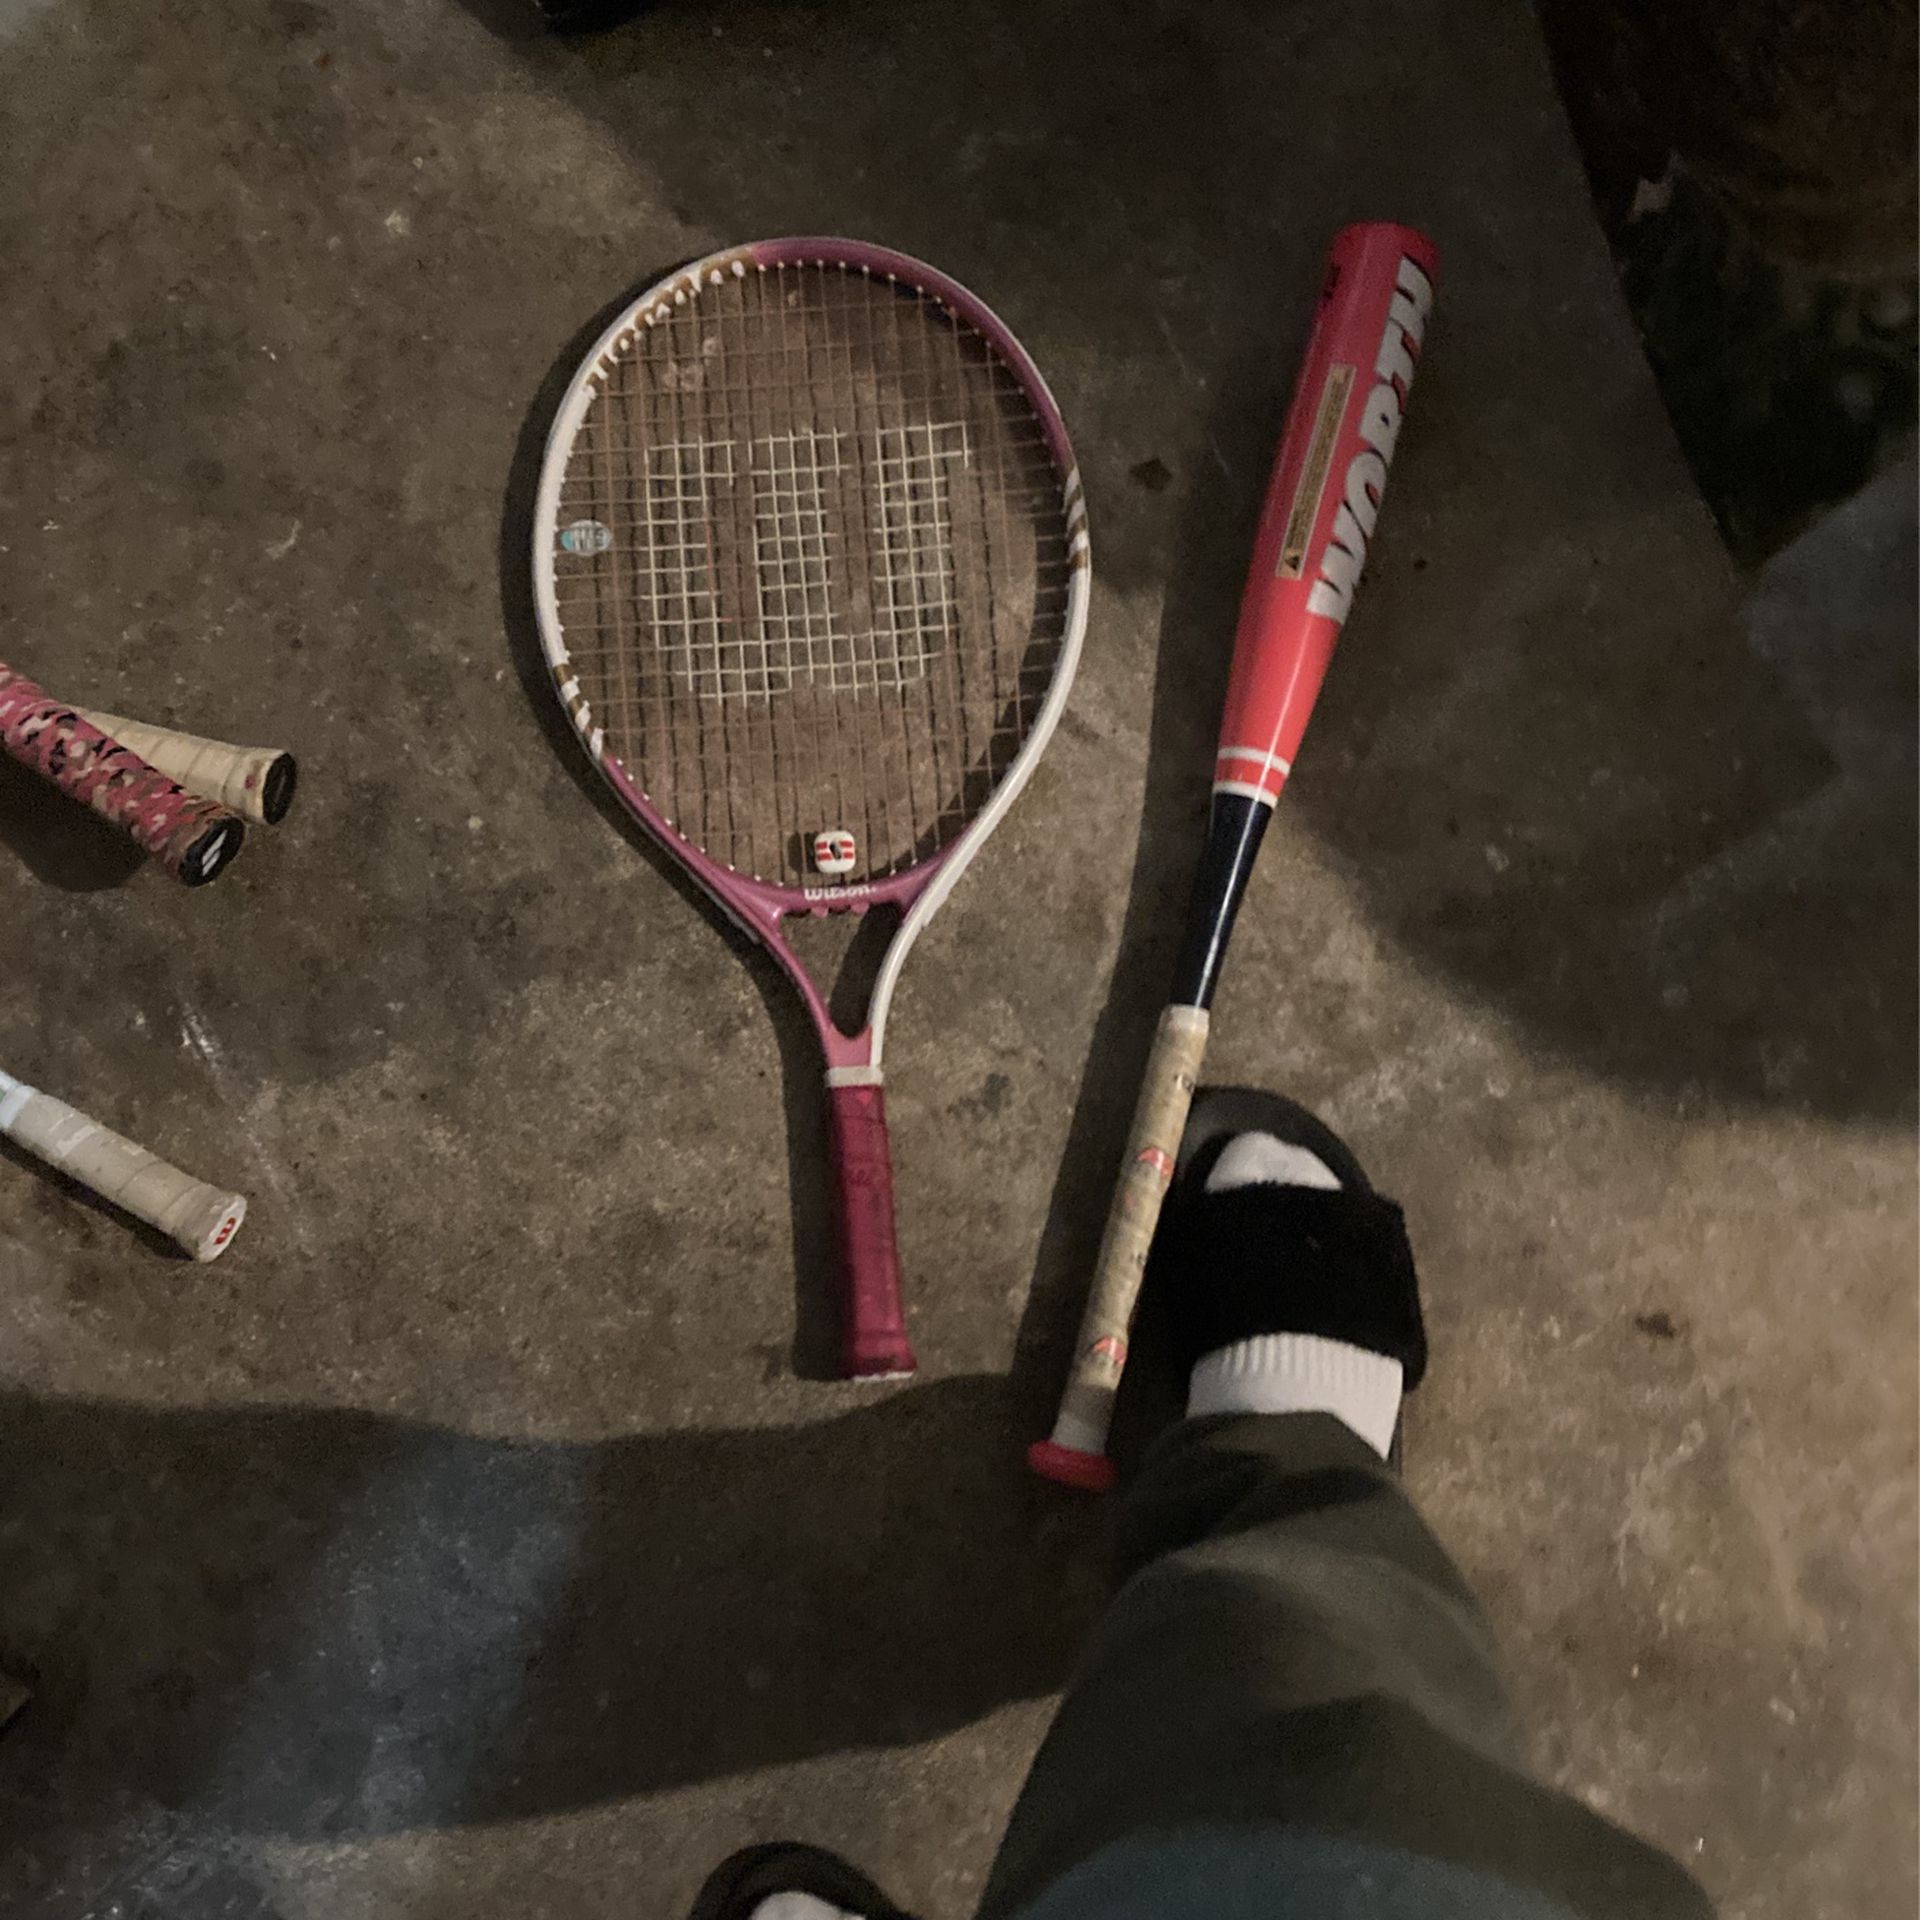 Wilson Tennis Racket And A Baseball Bat